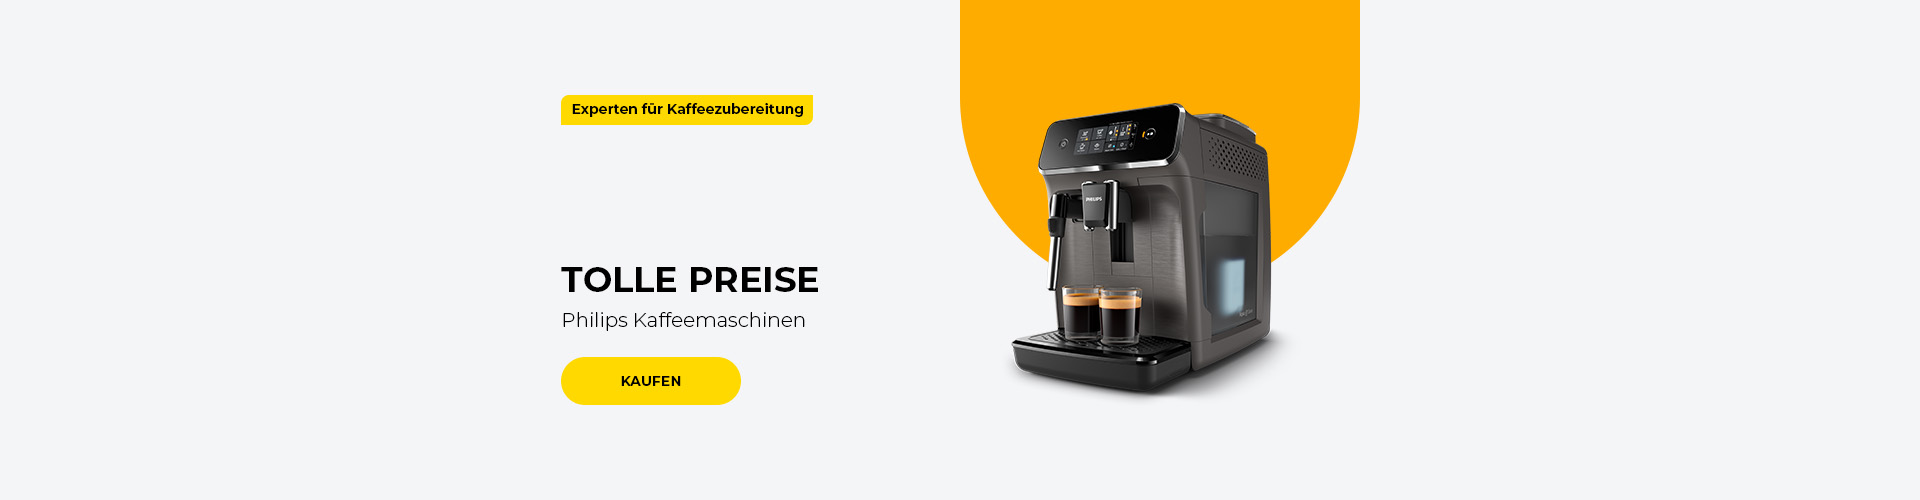 "TOLLE PREISE Philips Kaffeemaschinen"